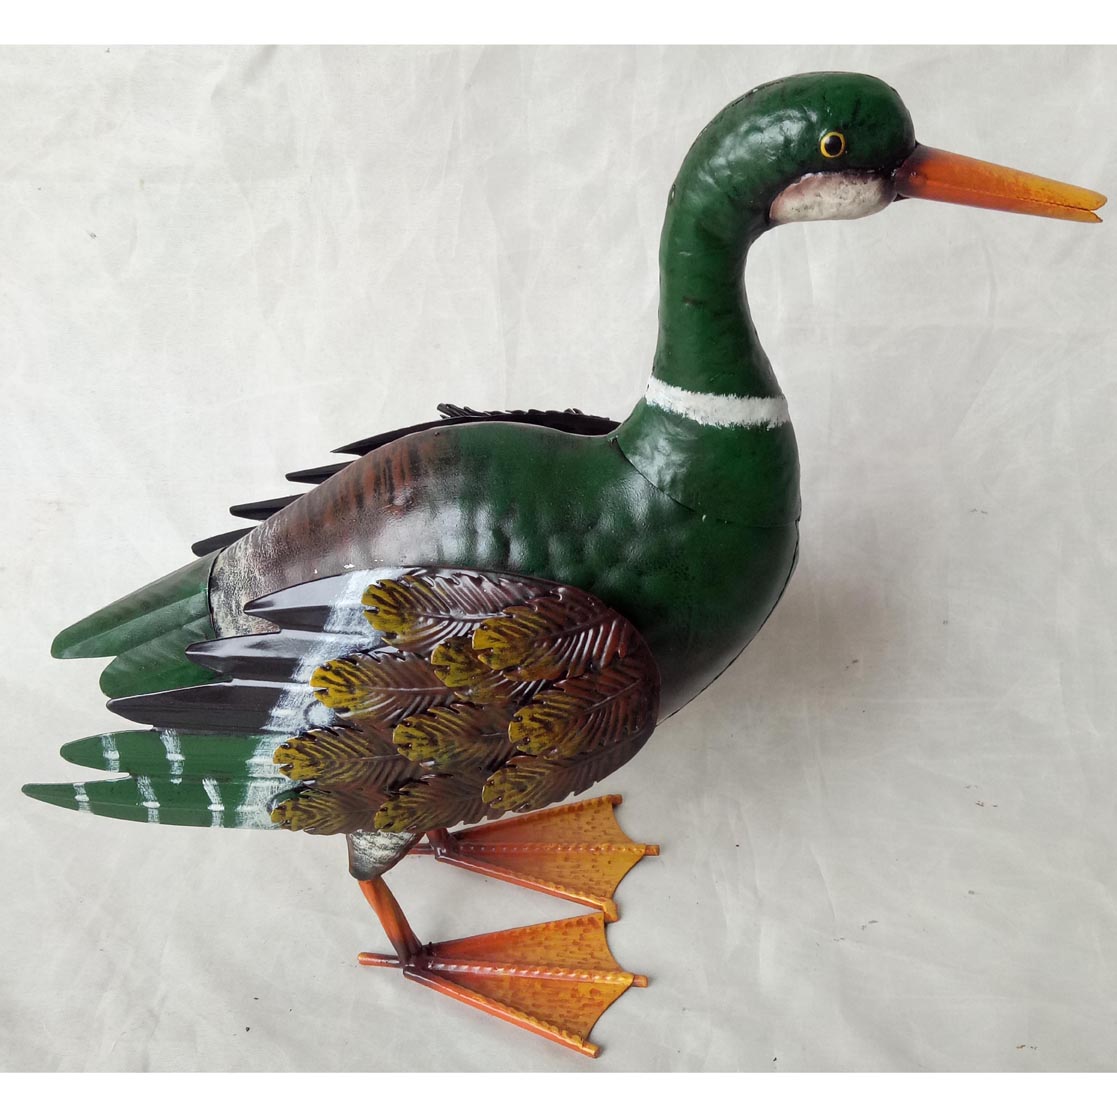 Hand-made metal garden decor duck ornament